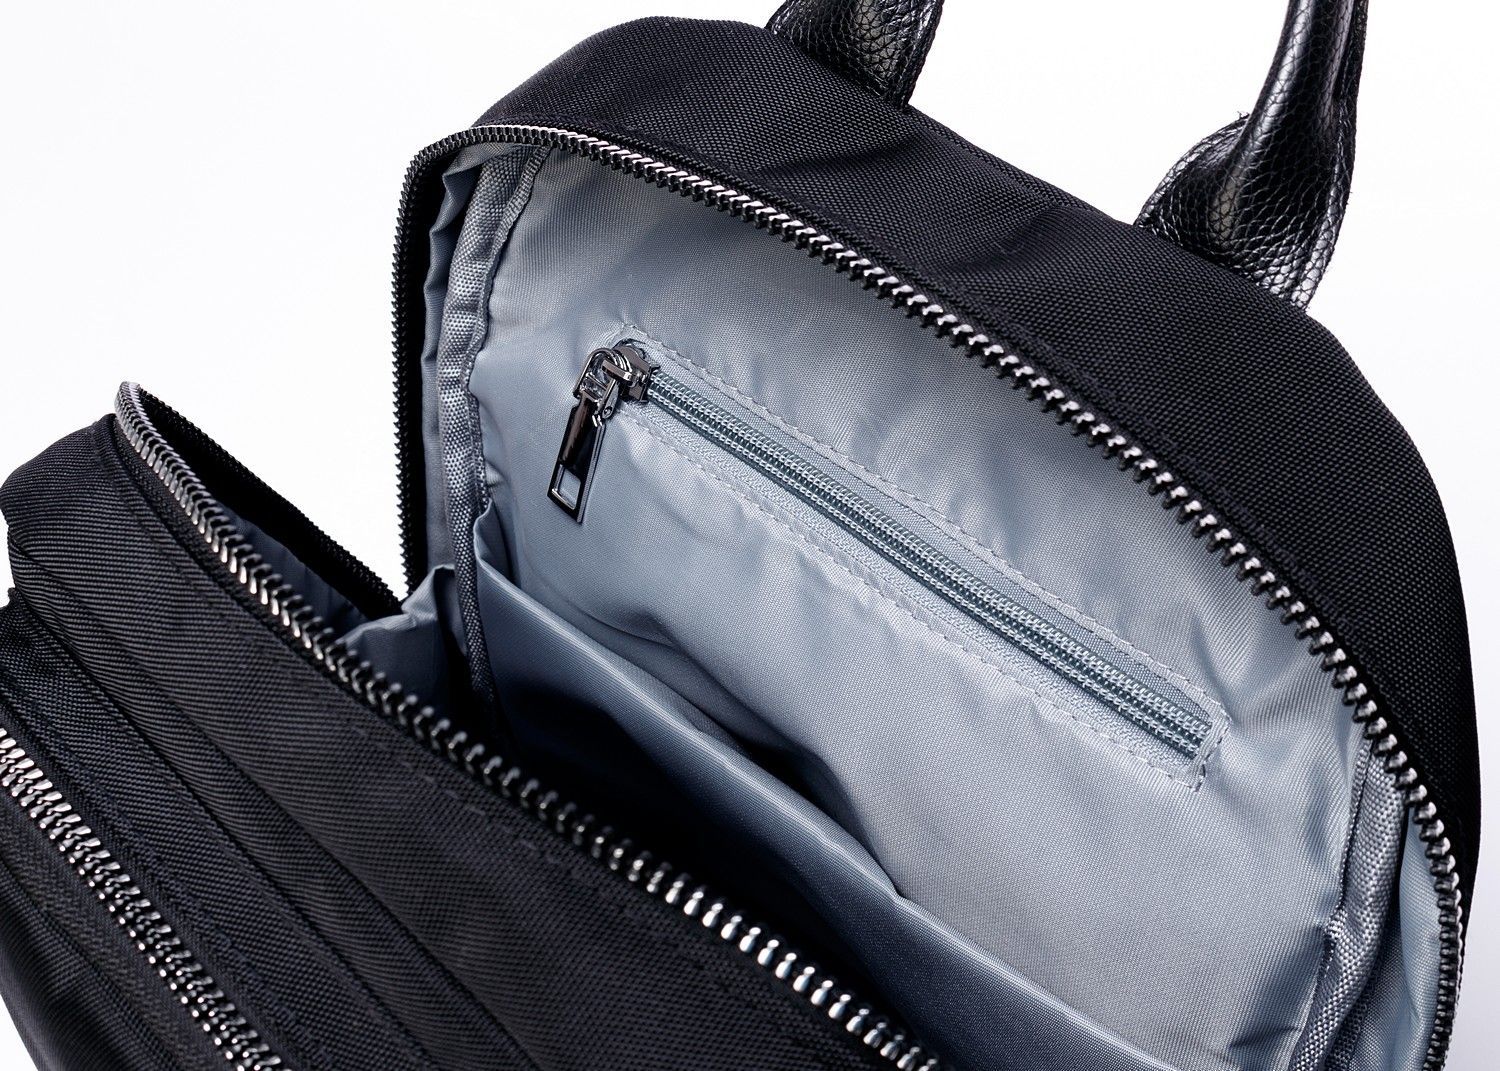 Рюкзак женский городской, черный, со стандартными лямками, 10 л